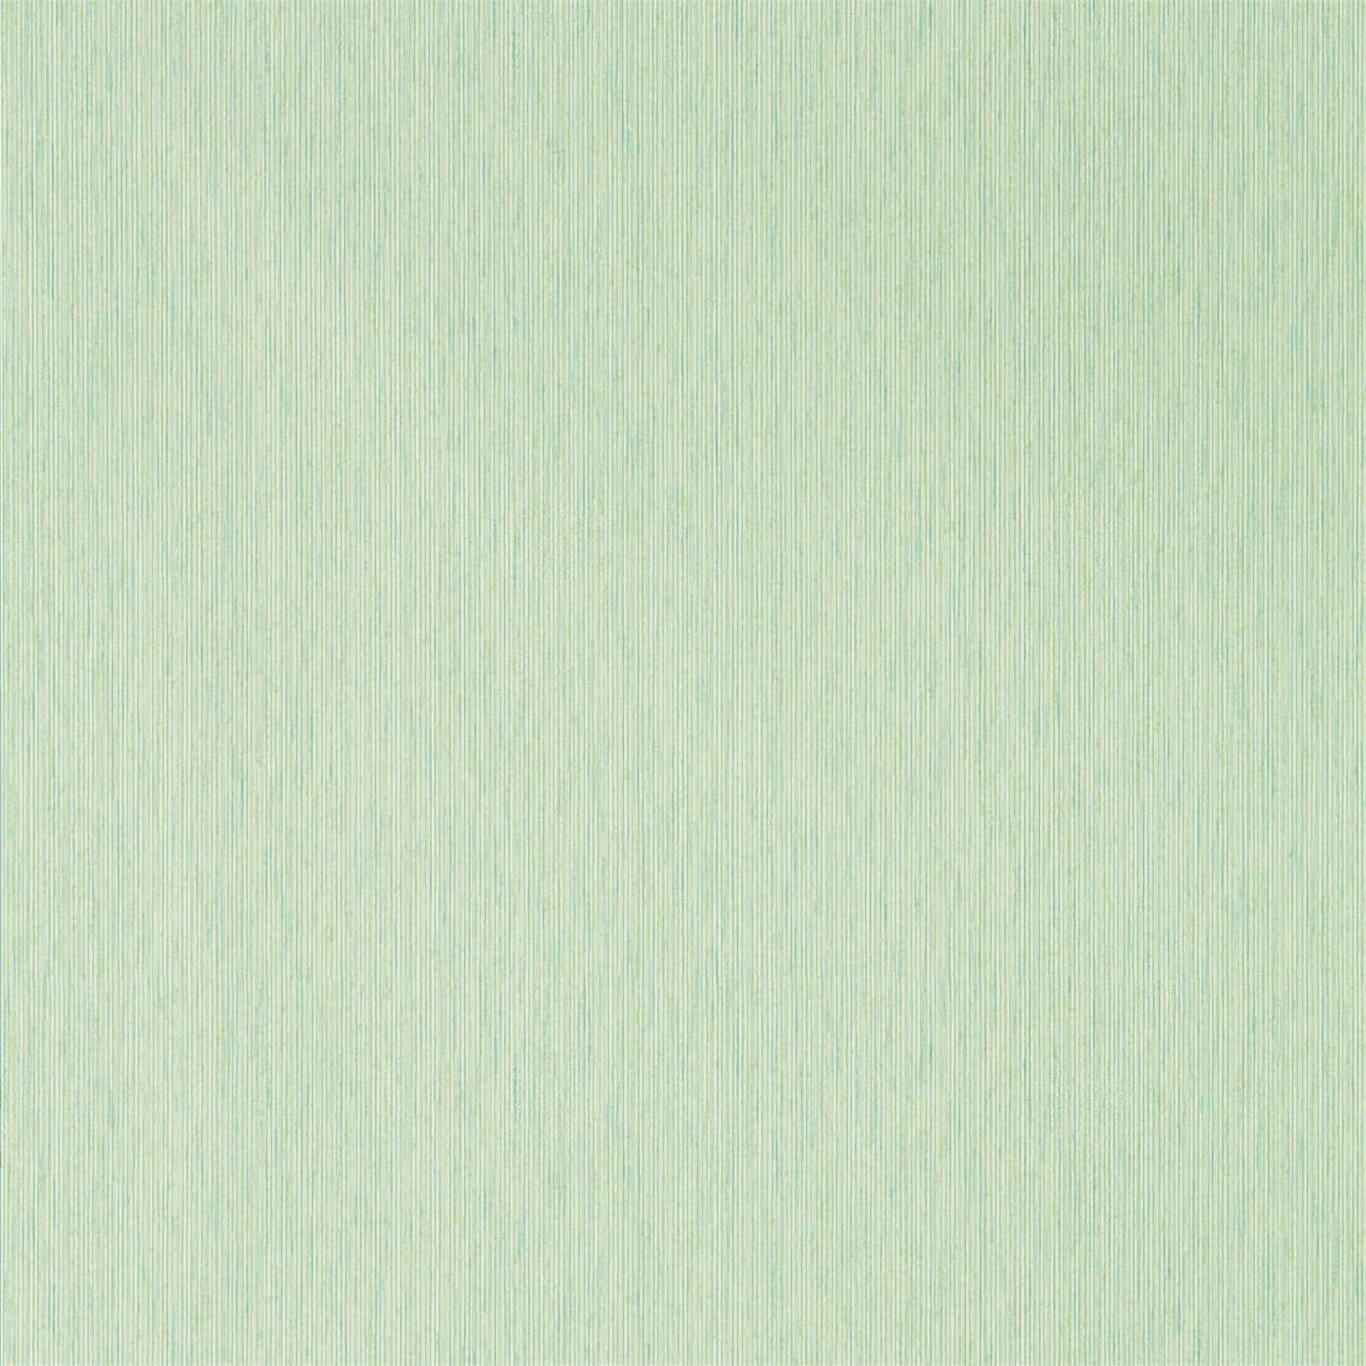 Caspian Strie Grass Wallpaper DCPW216772 by Sanderson